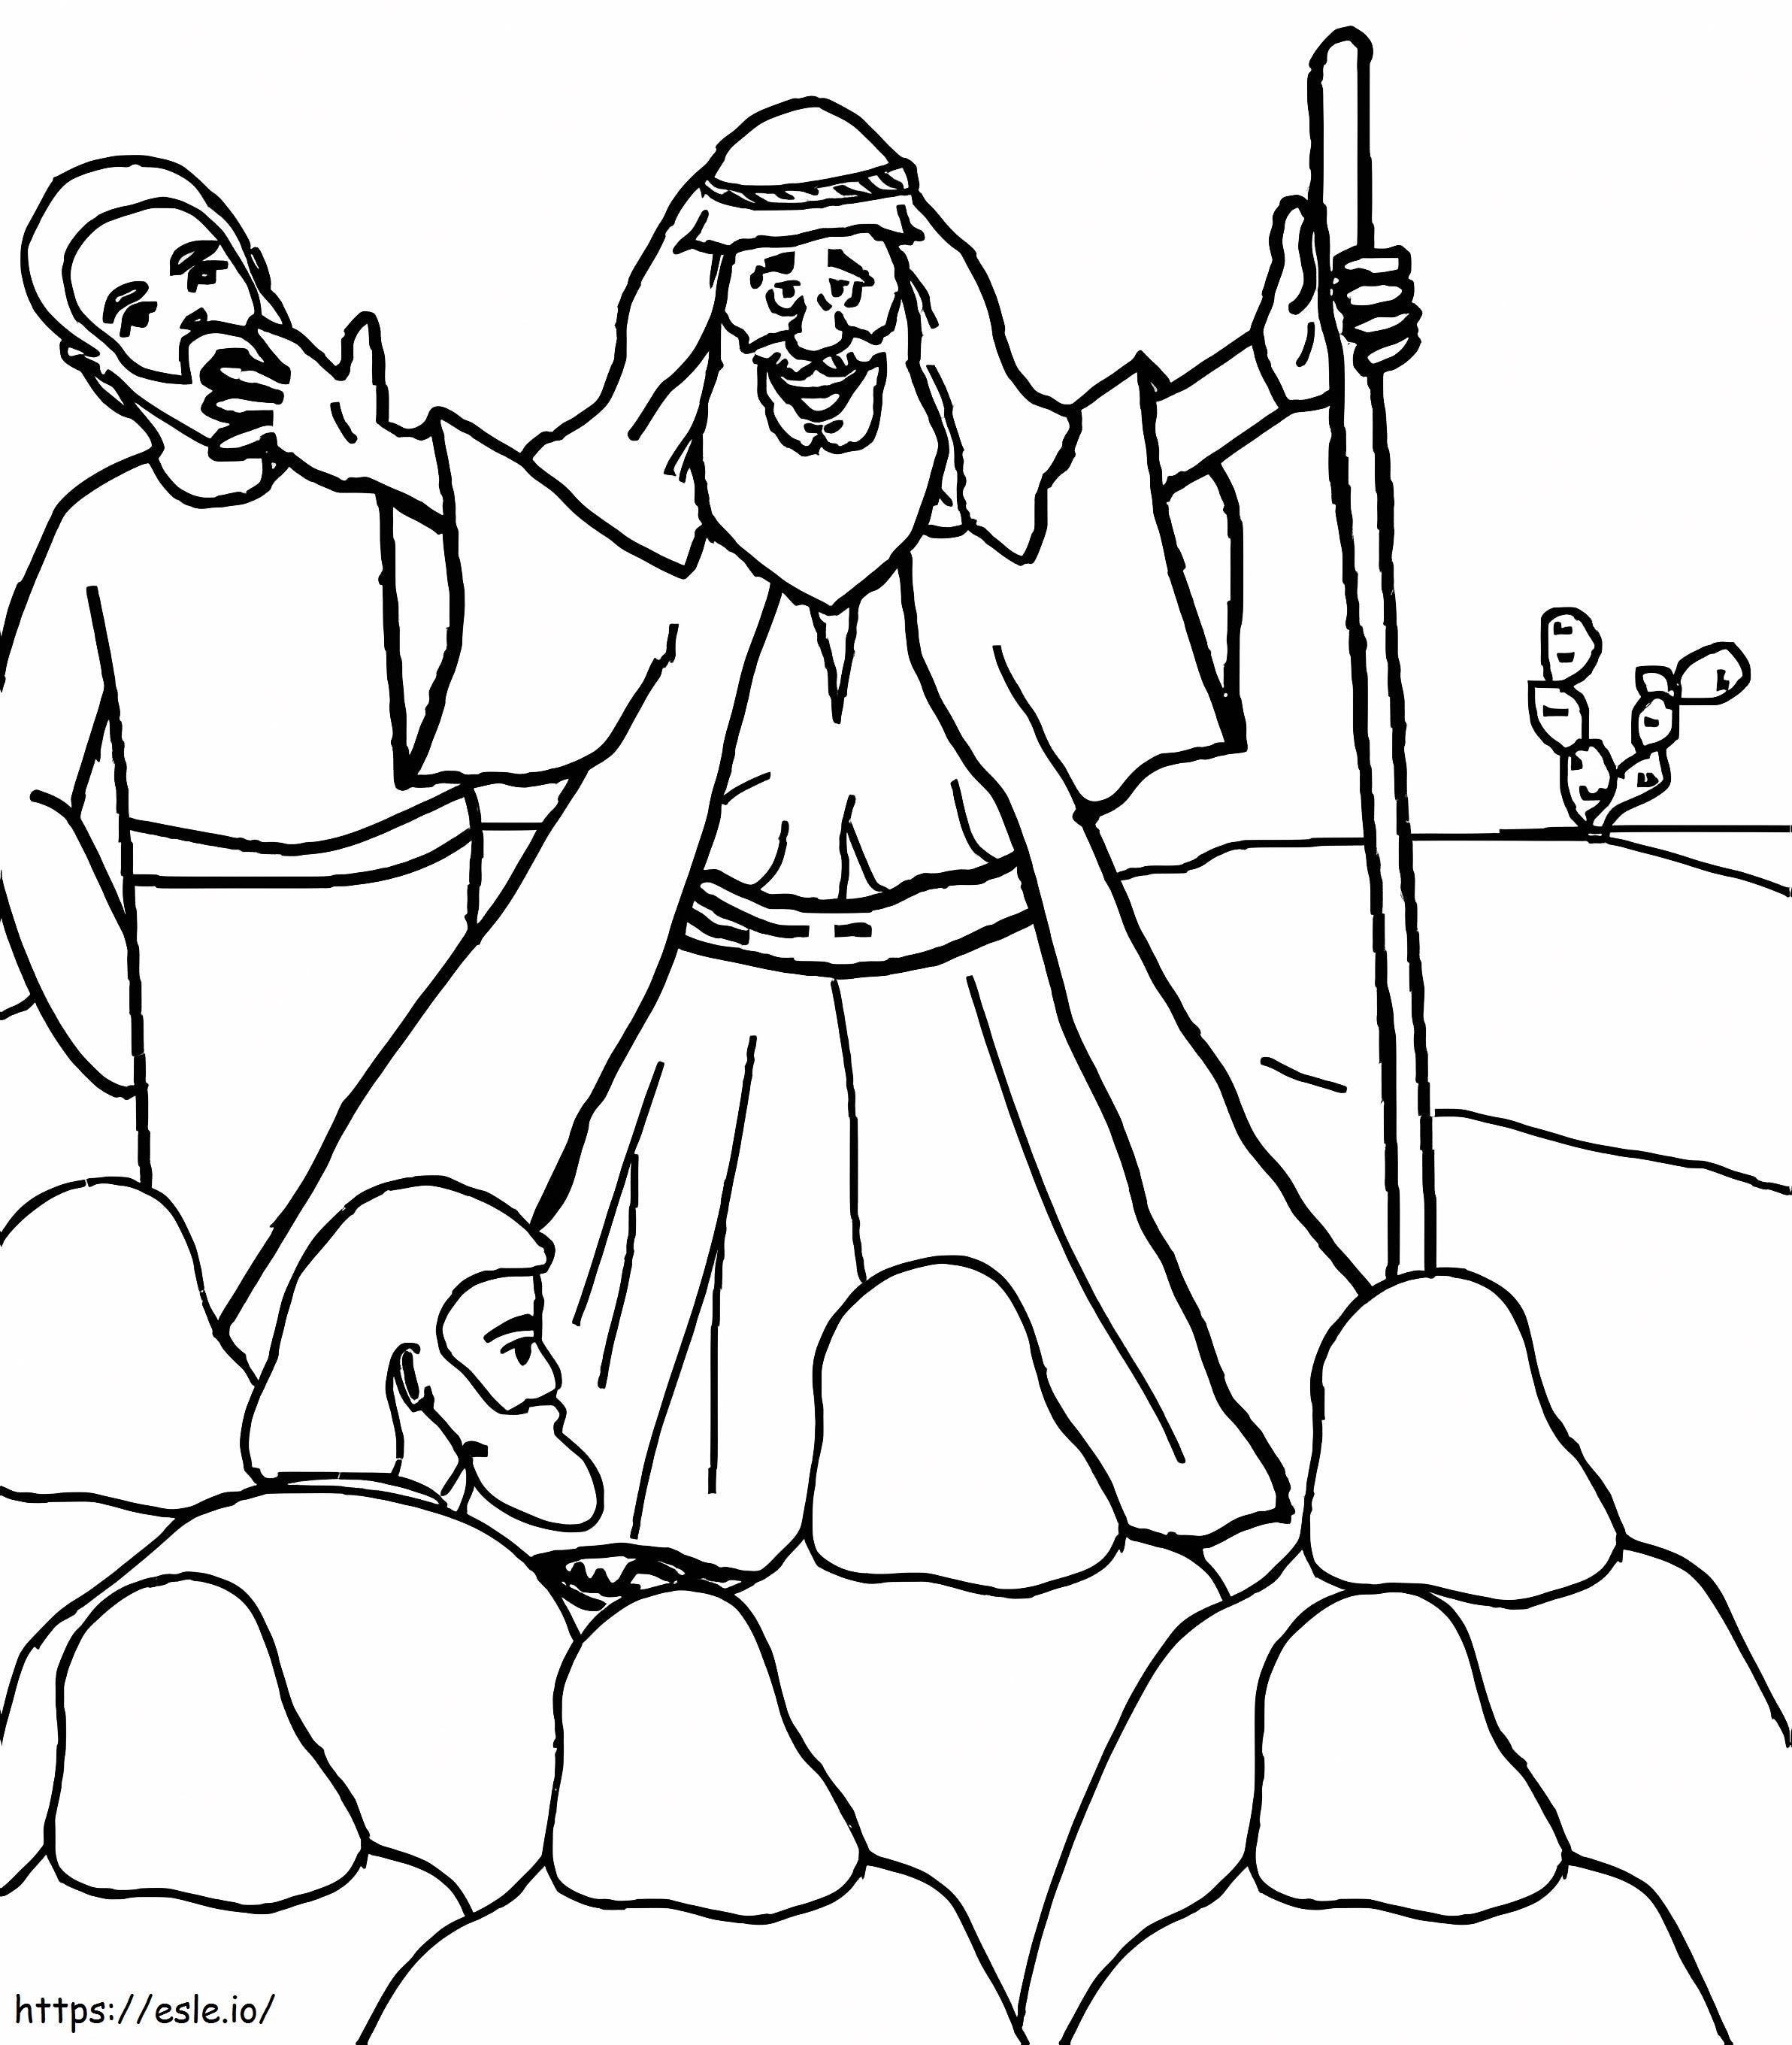 Mojżesz mówi kolorowanka